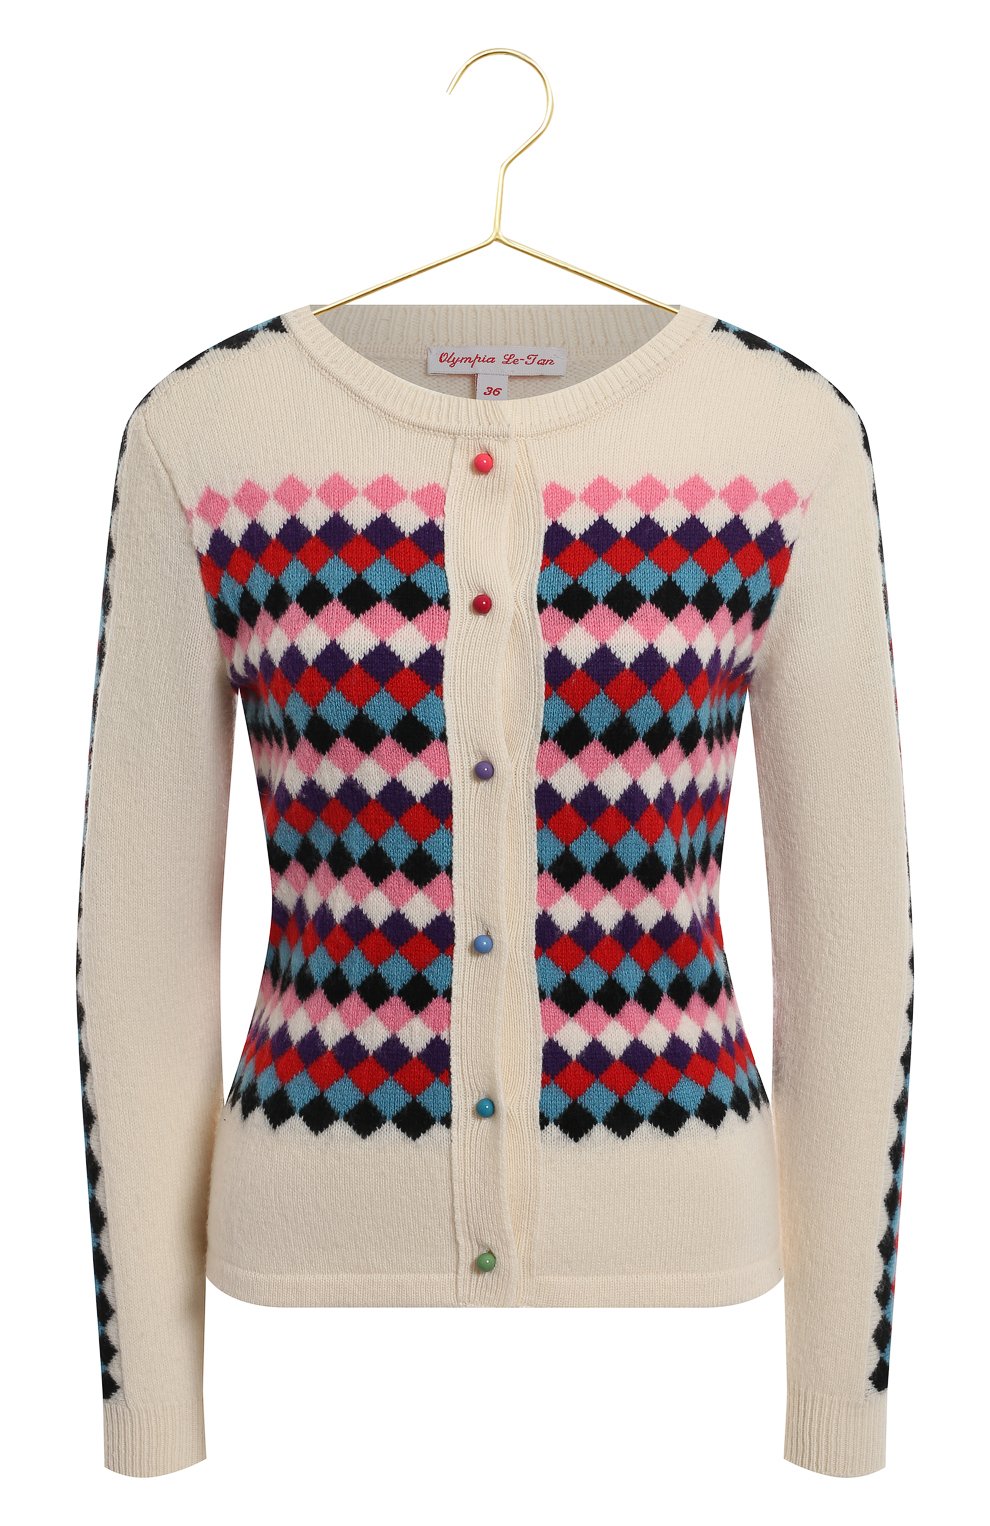 Шерстяной кардиган и пуловер | Olympia Le-Tan | Разноцветный - 2